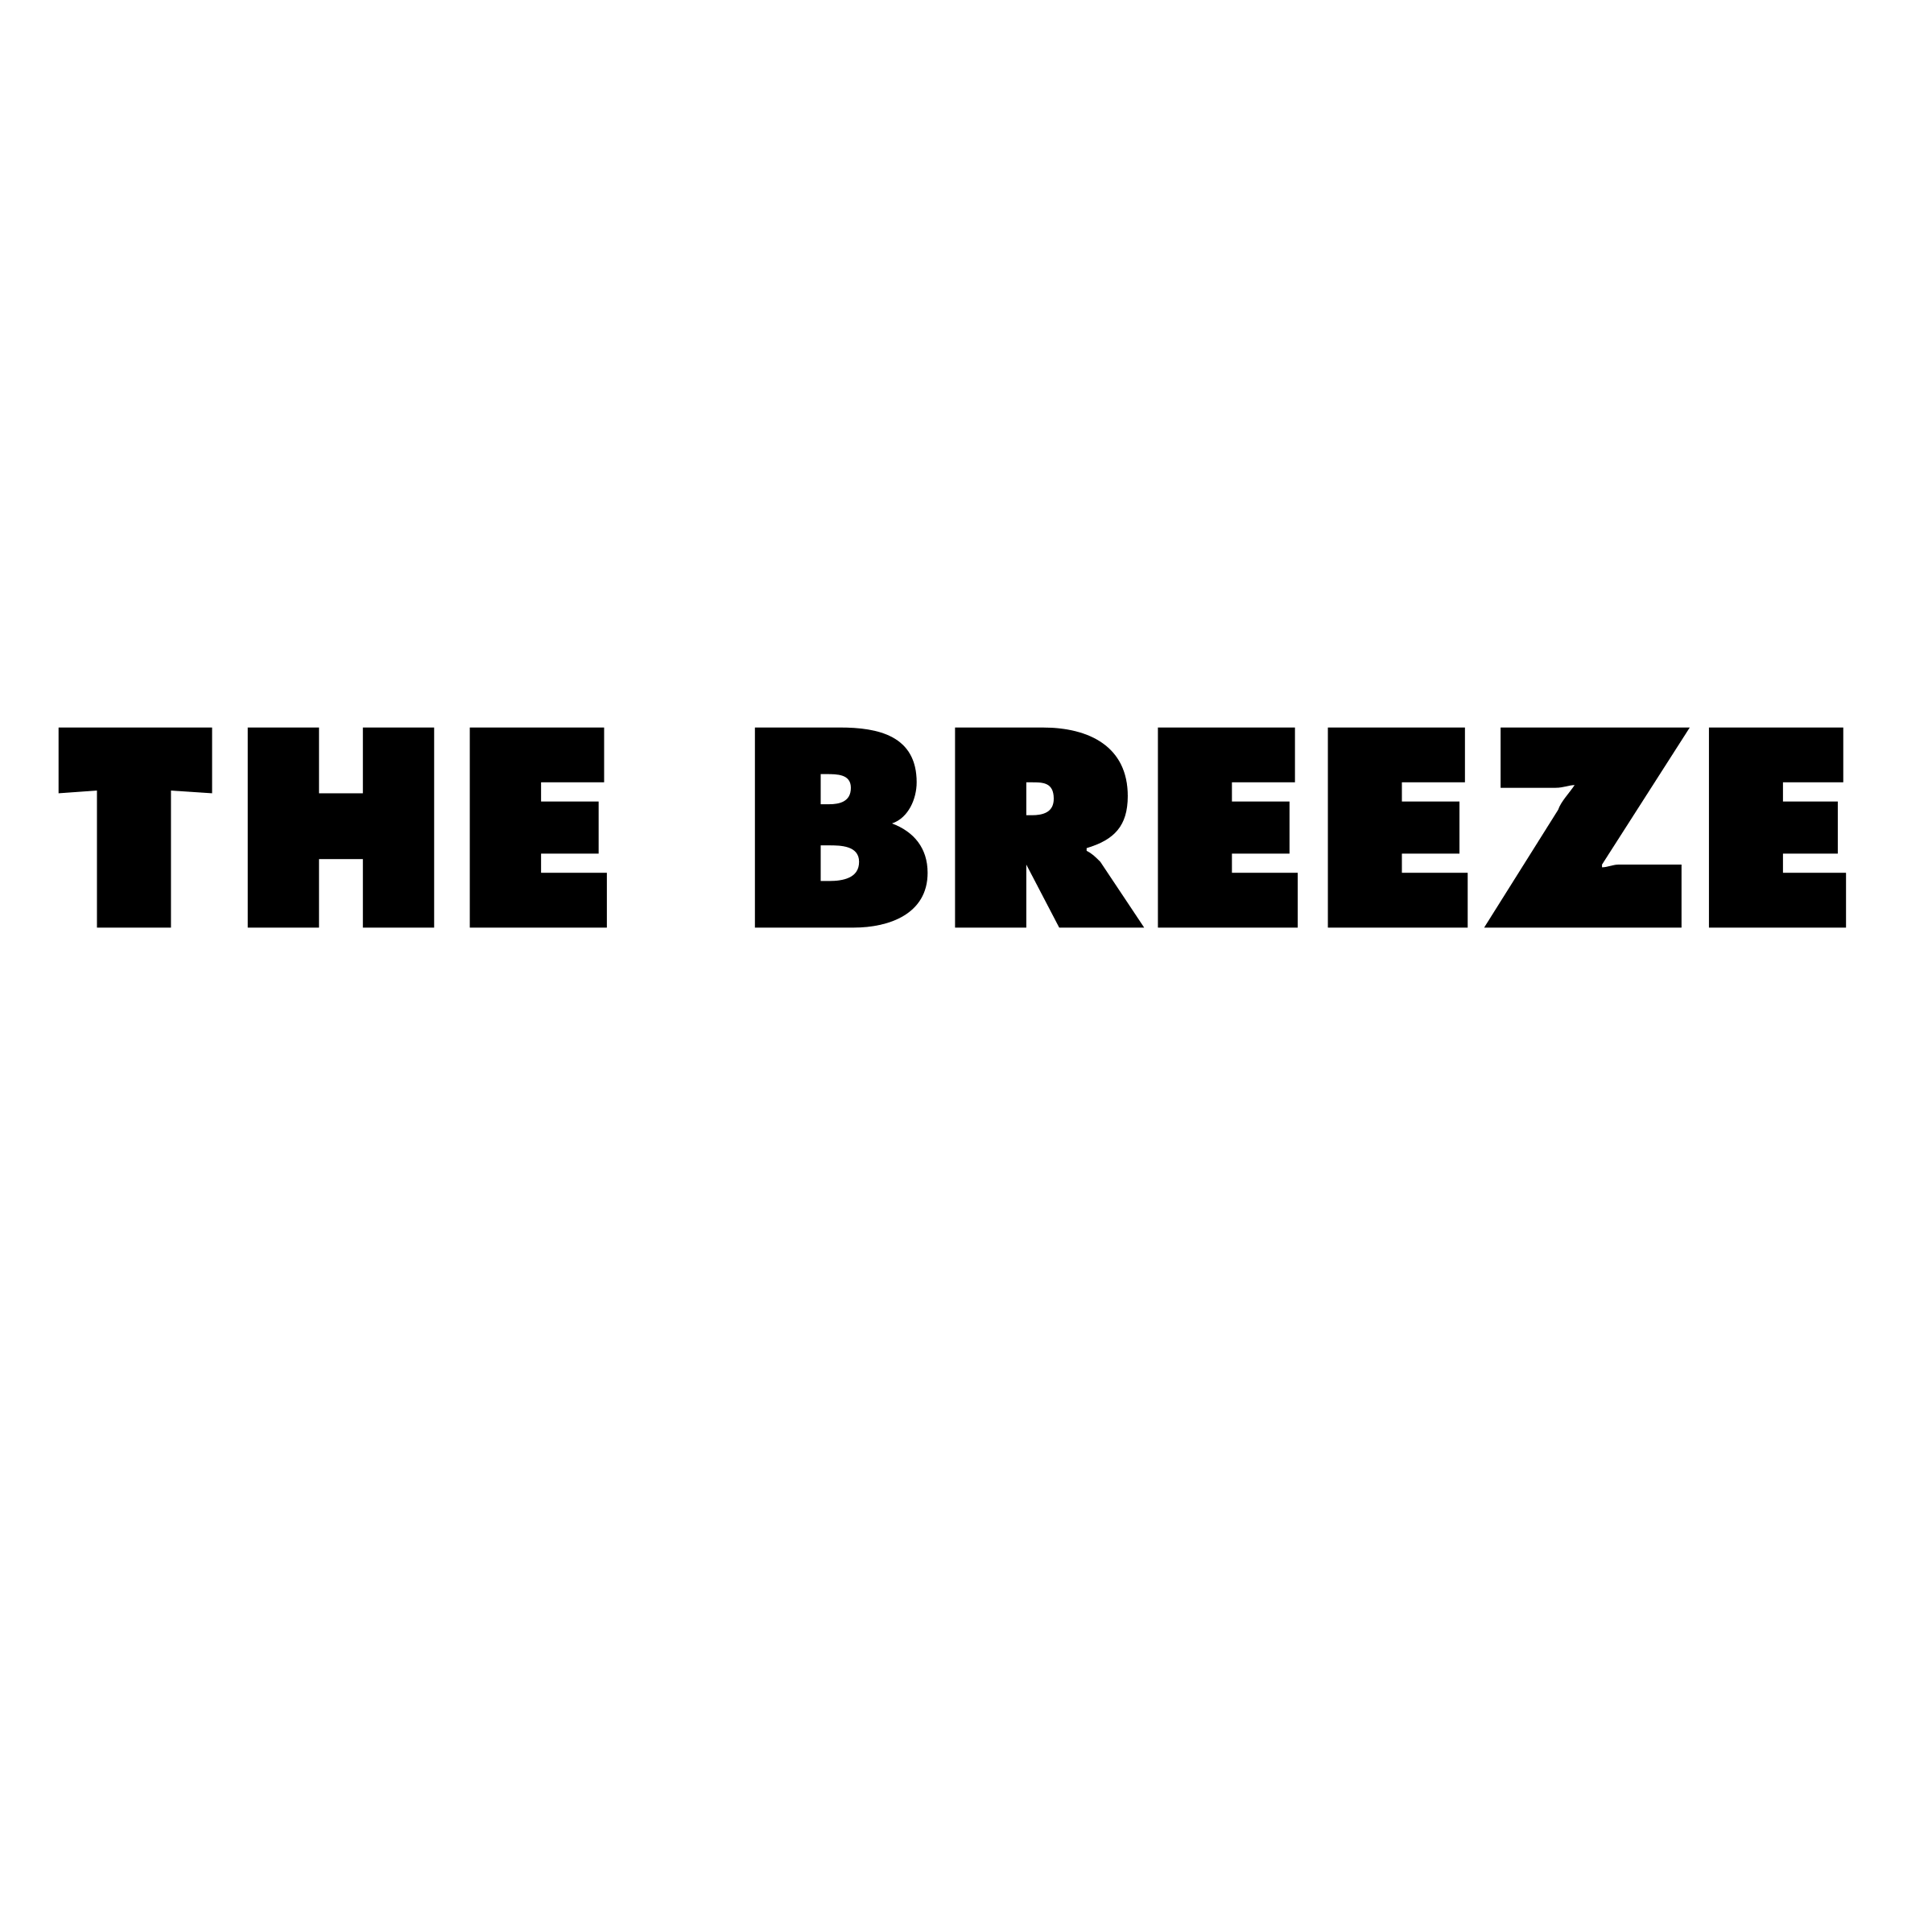 Black Breeze Logo - The Breeze Logo PNG Transparent & SVG Vector